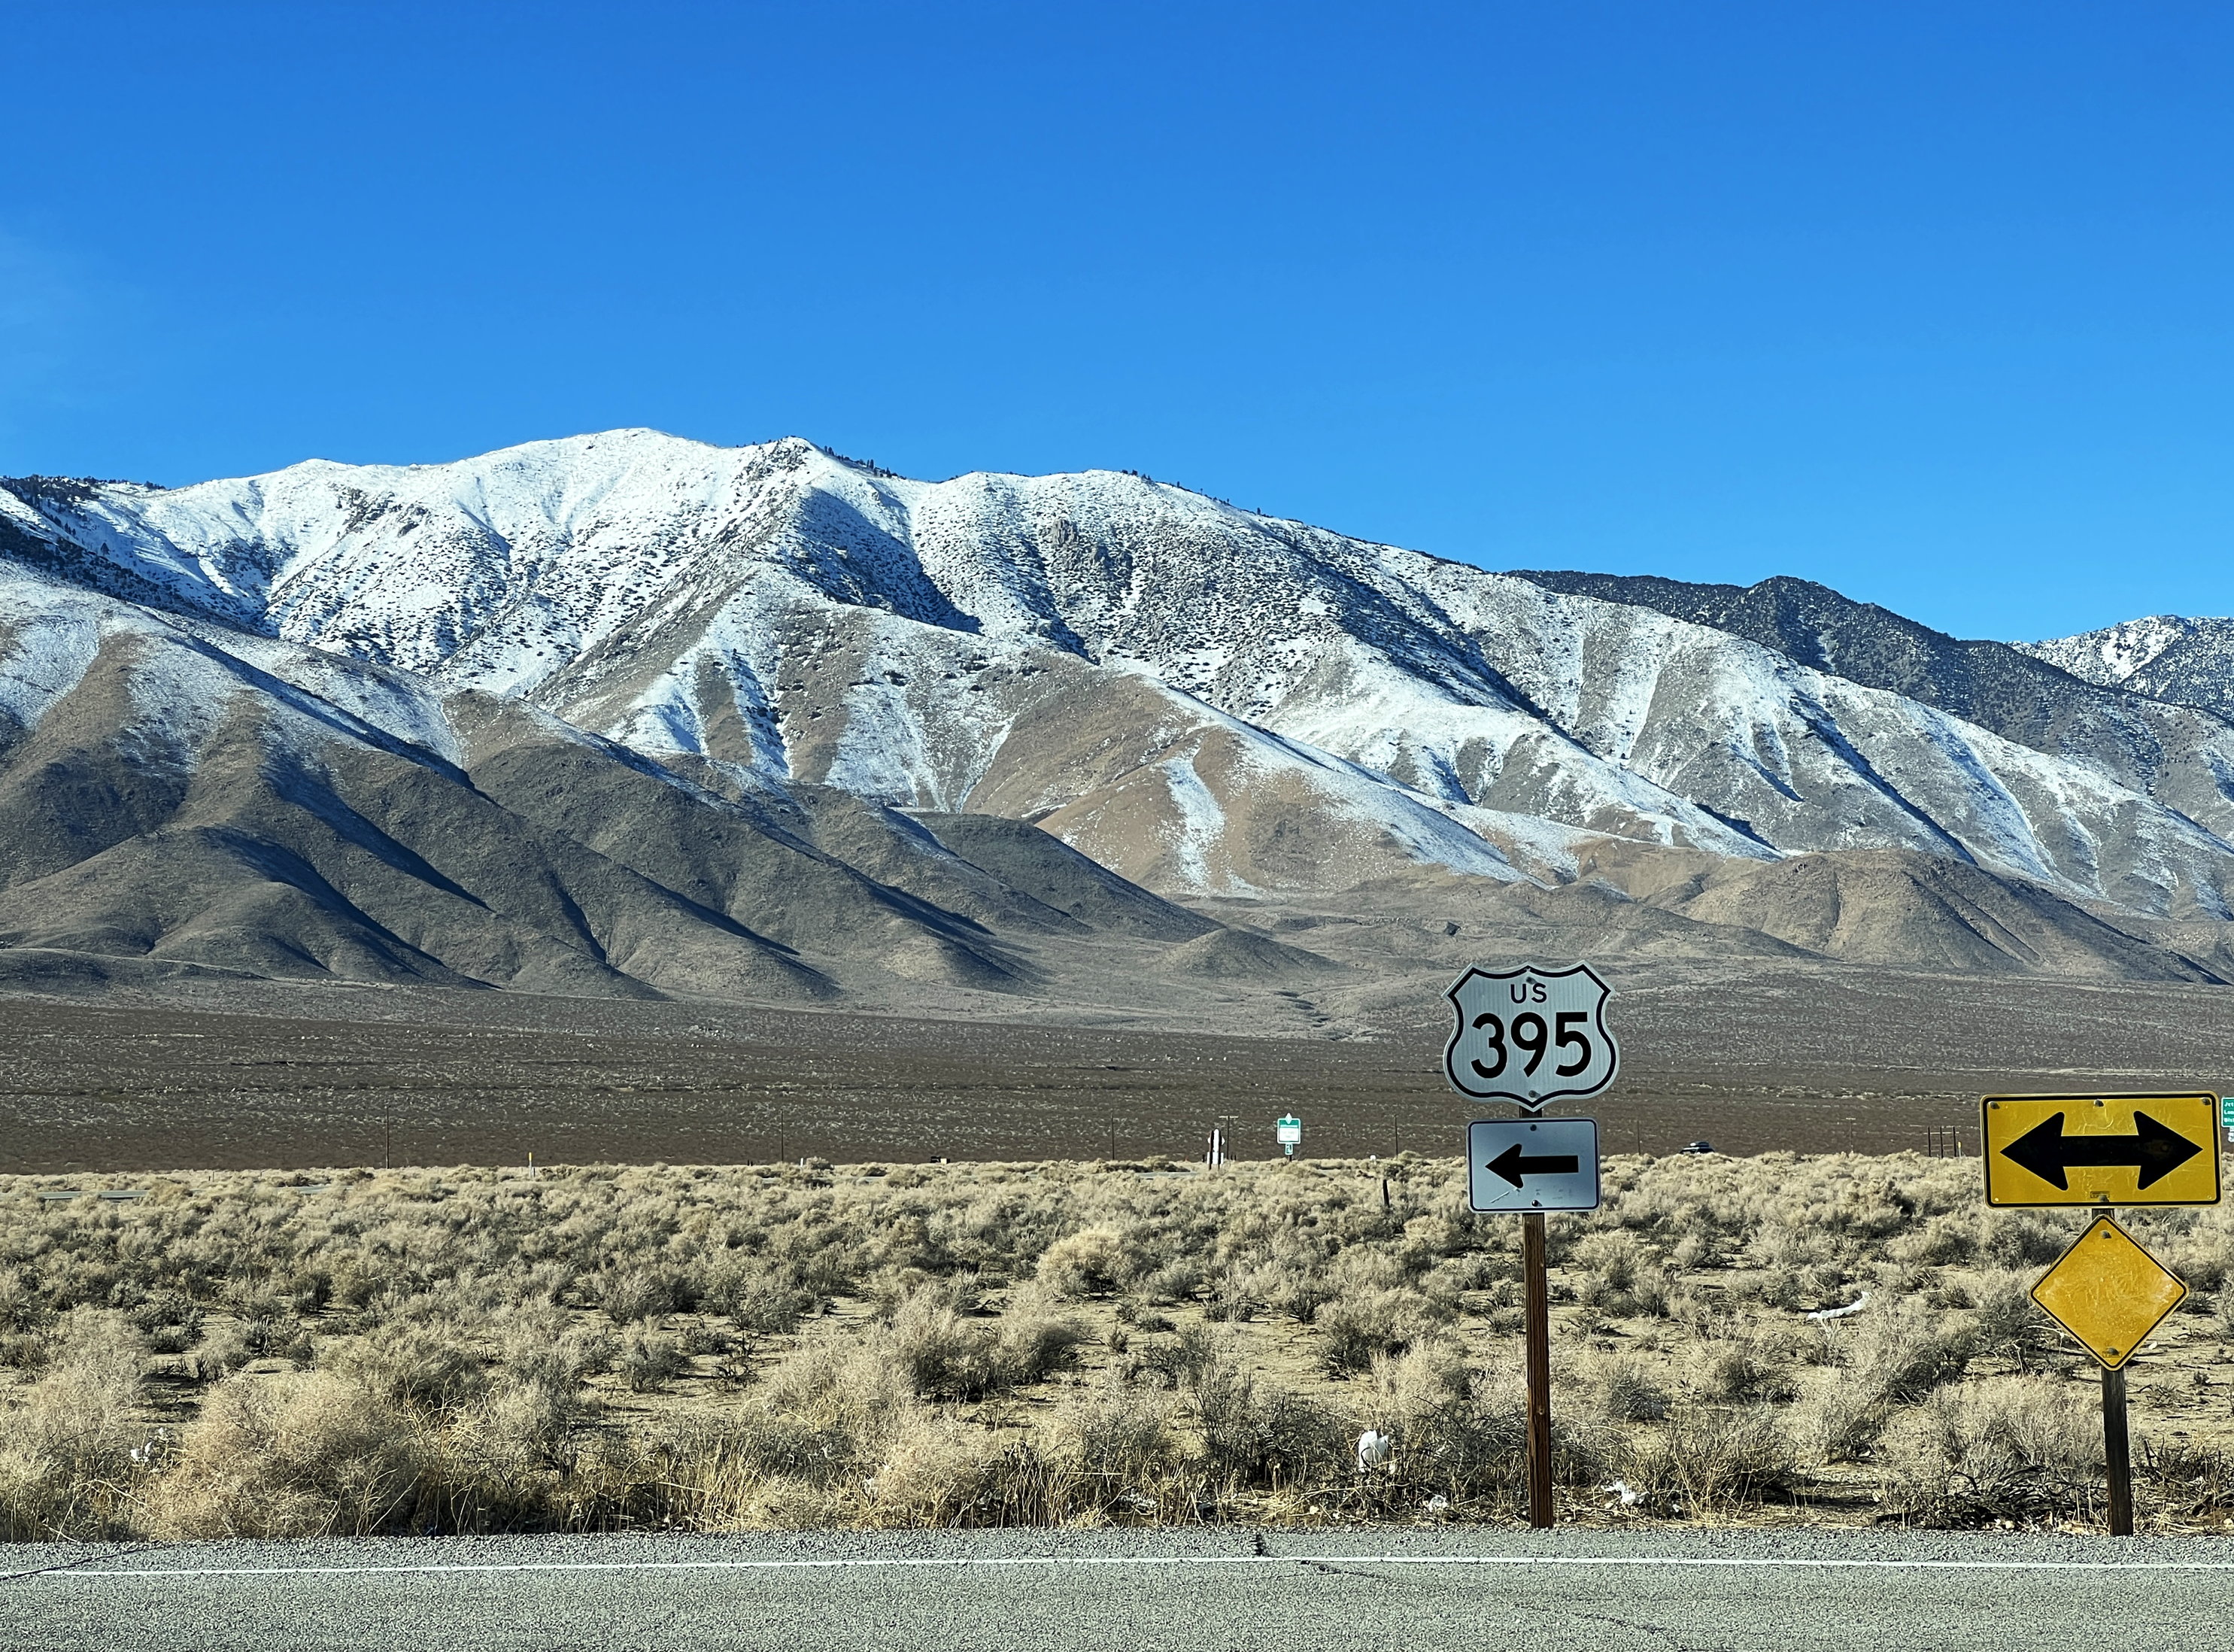 Strassenschild California Highway 395, dahinter die schneebedeckten Berge der Sierra Nevada